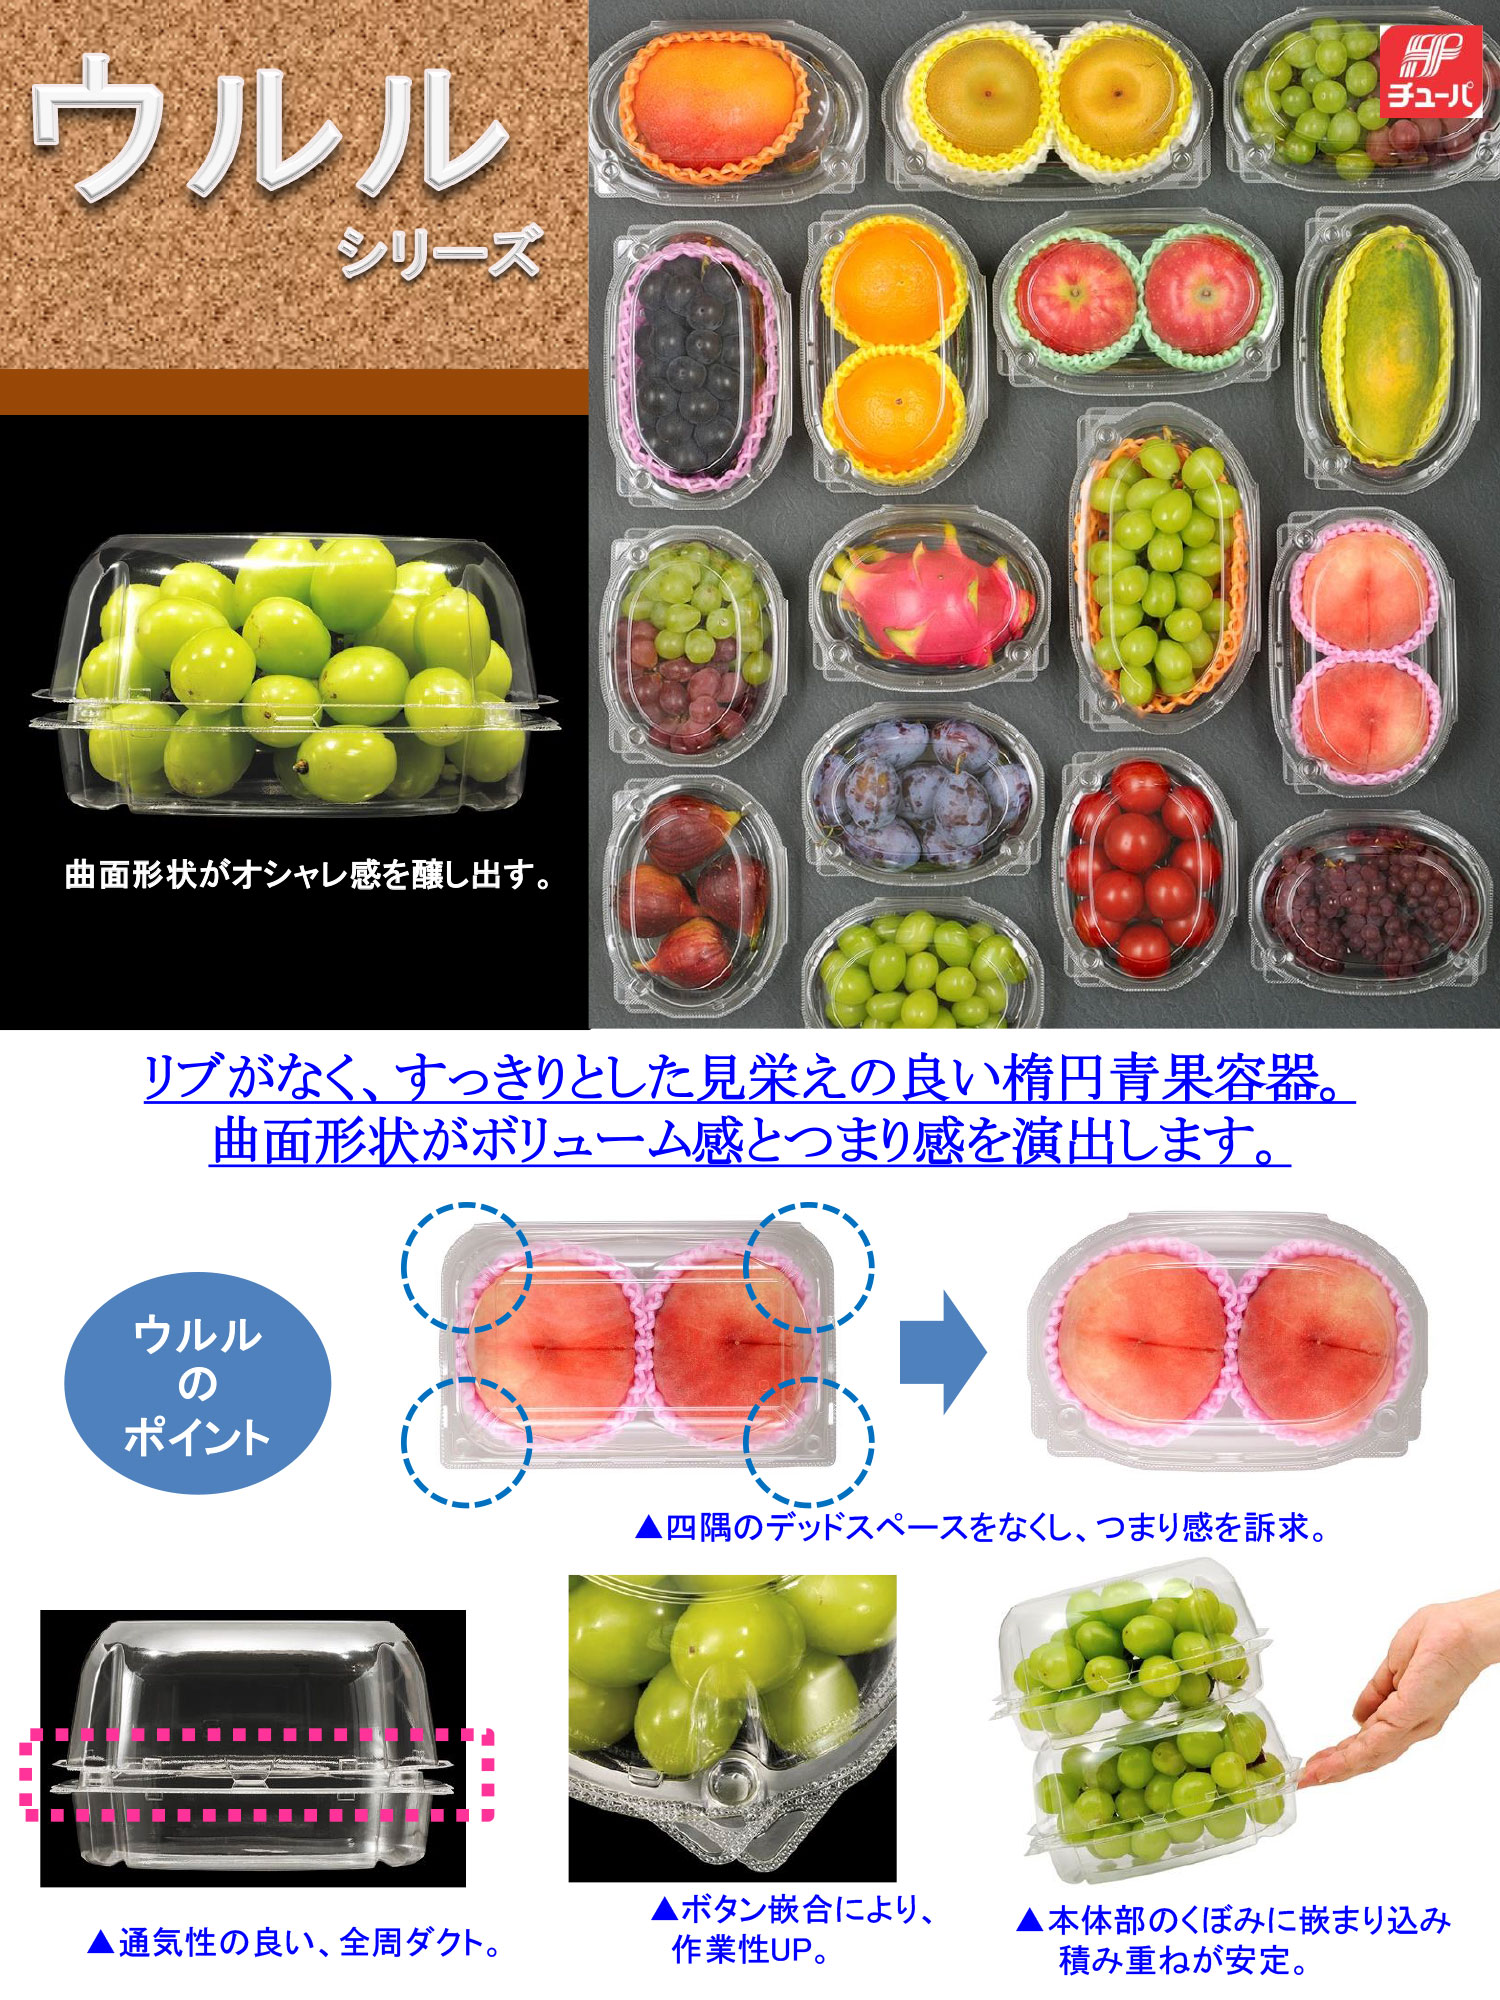 エフピコチューパwebカタログ | 野菜・フルーツパッケージとシール印刷